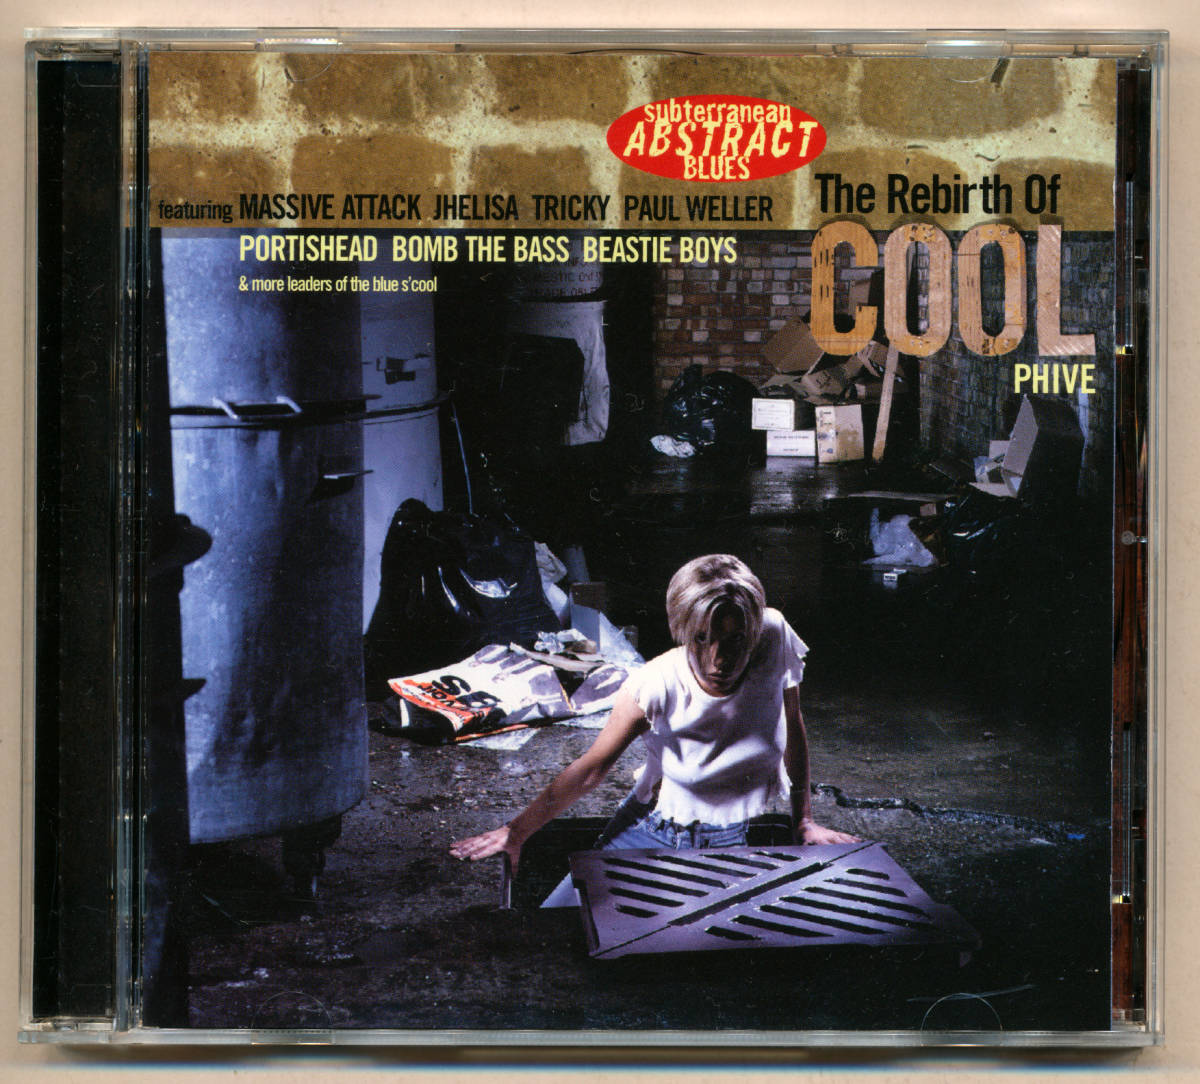 中古CD “モ”リバース・オブ・クール The Rebirth Of Cool Phive 5 トリップホップ アシッドジャズ Massive Attack Cold Cut Beastie Boys